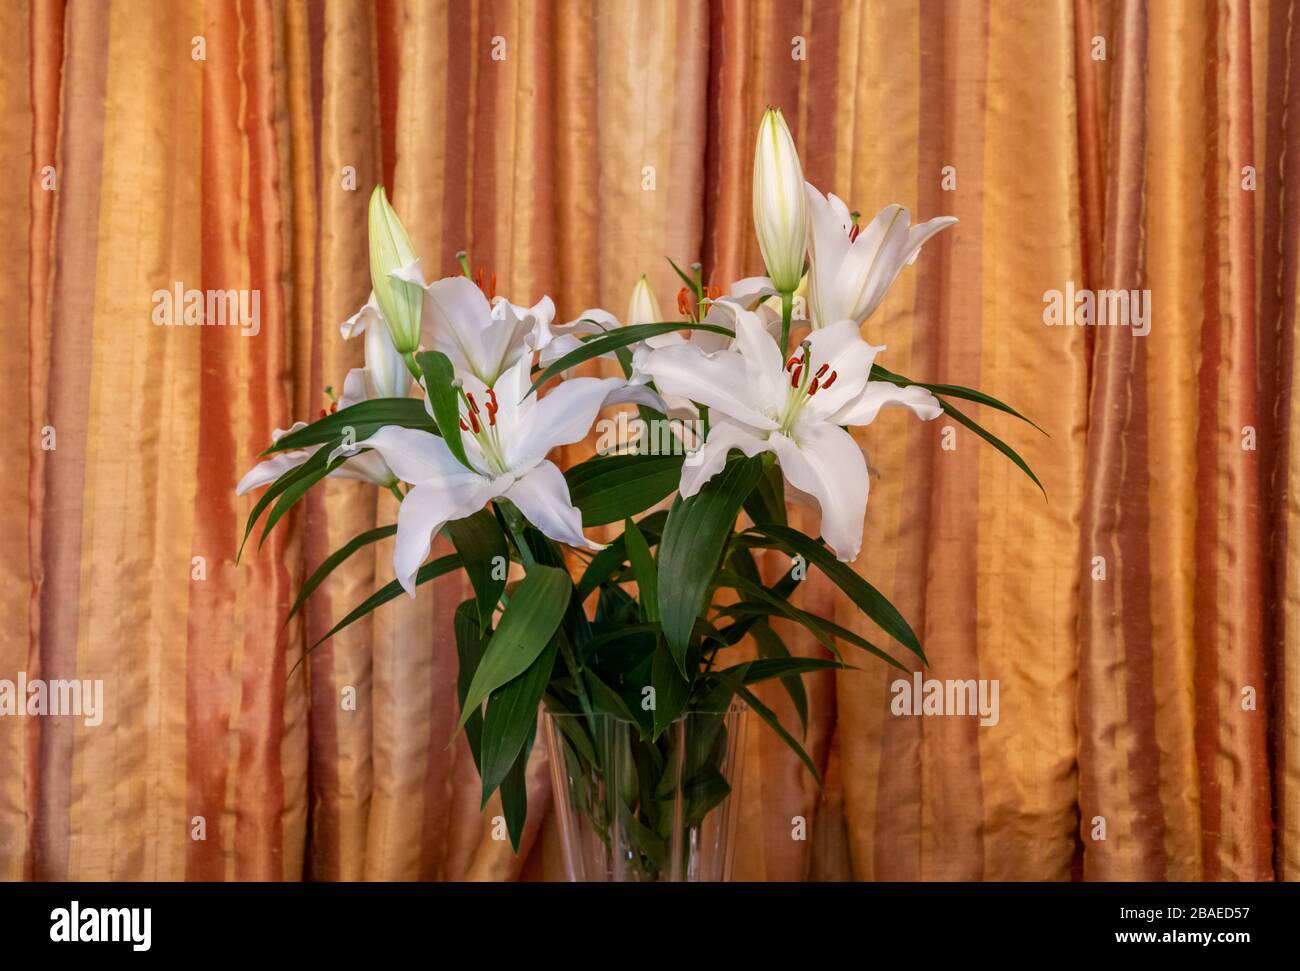 Photo de vie de l'intérieur avec des fleurs de lys coupées dans un vase avec des rideaux en soie dorée comme toile de fond. Banque D'Images